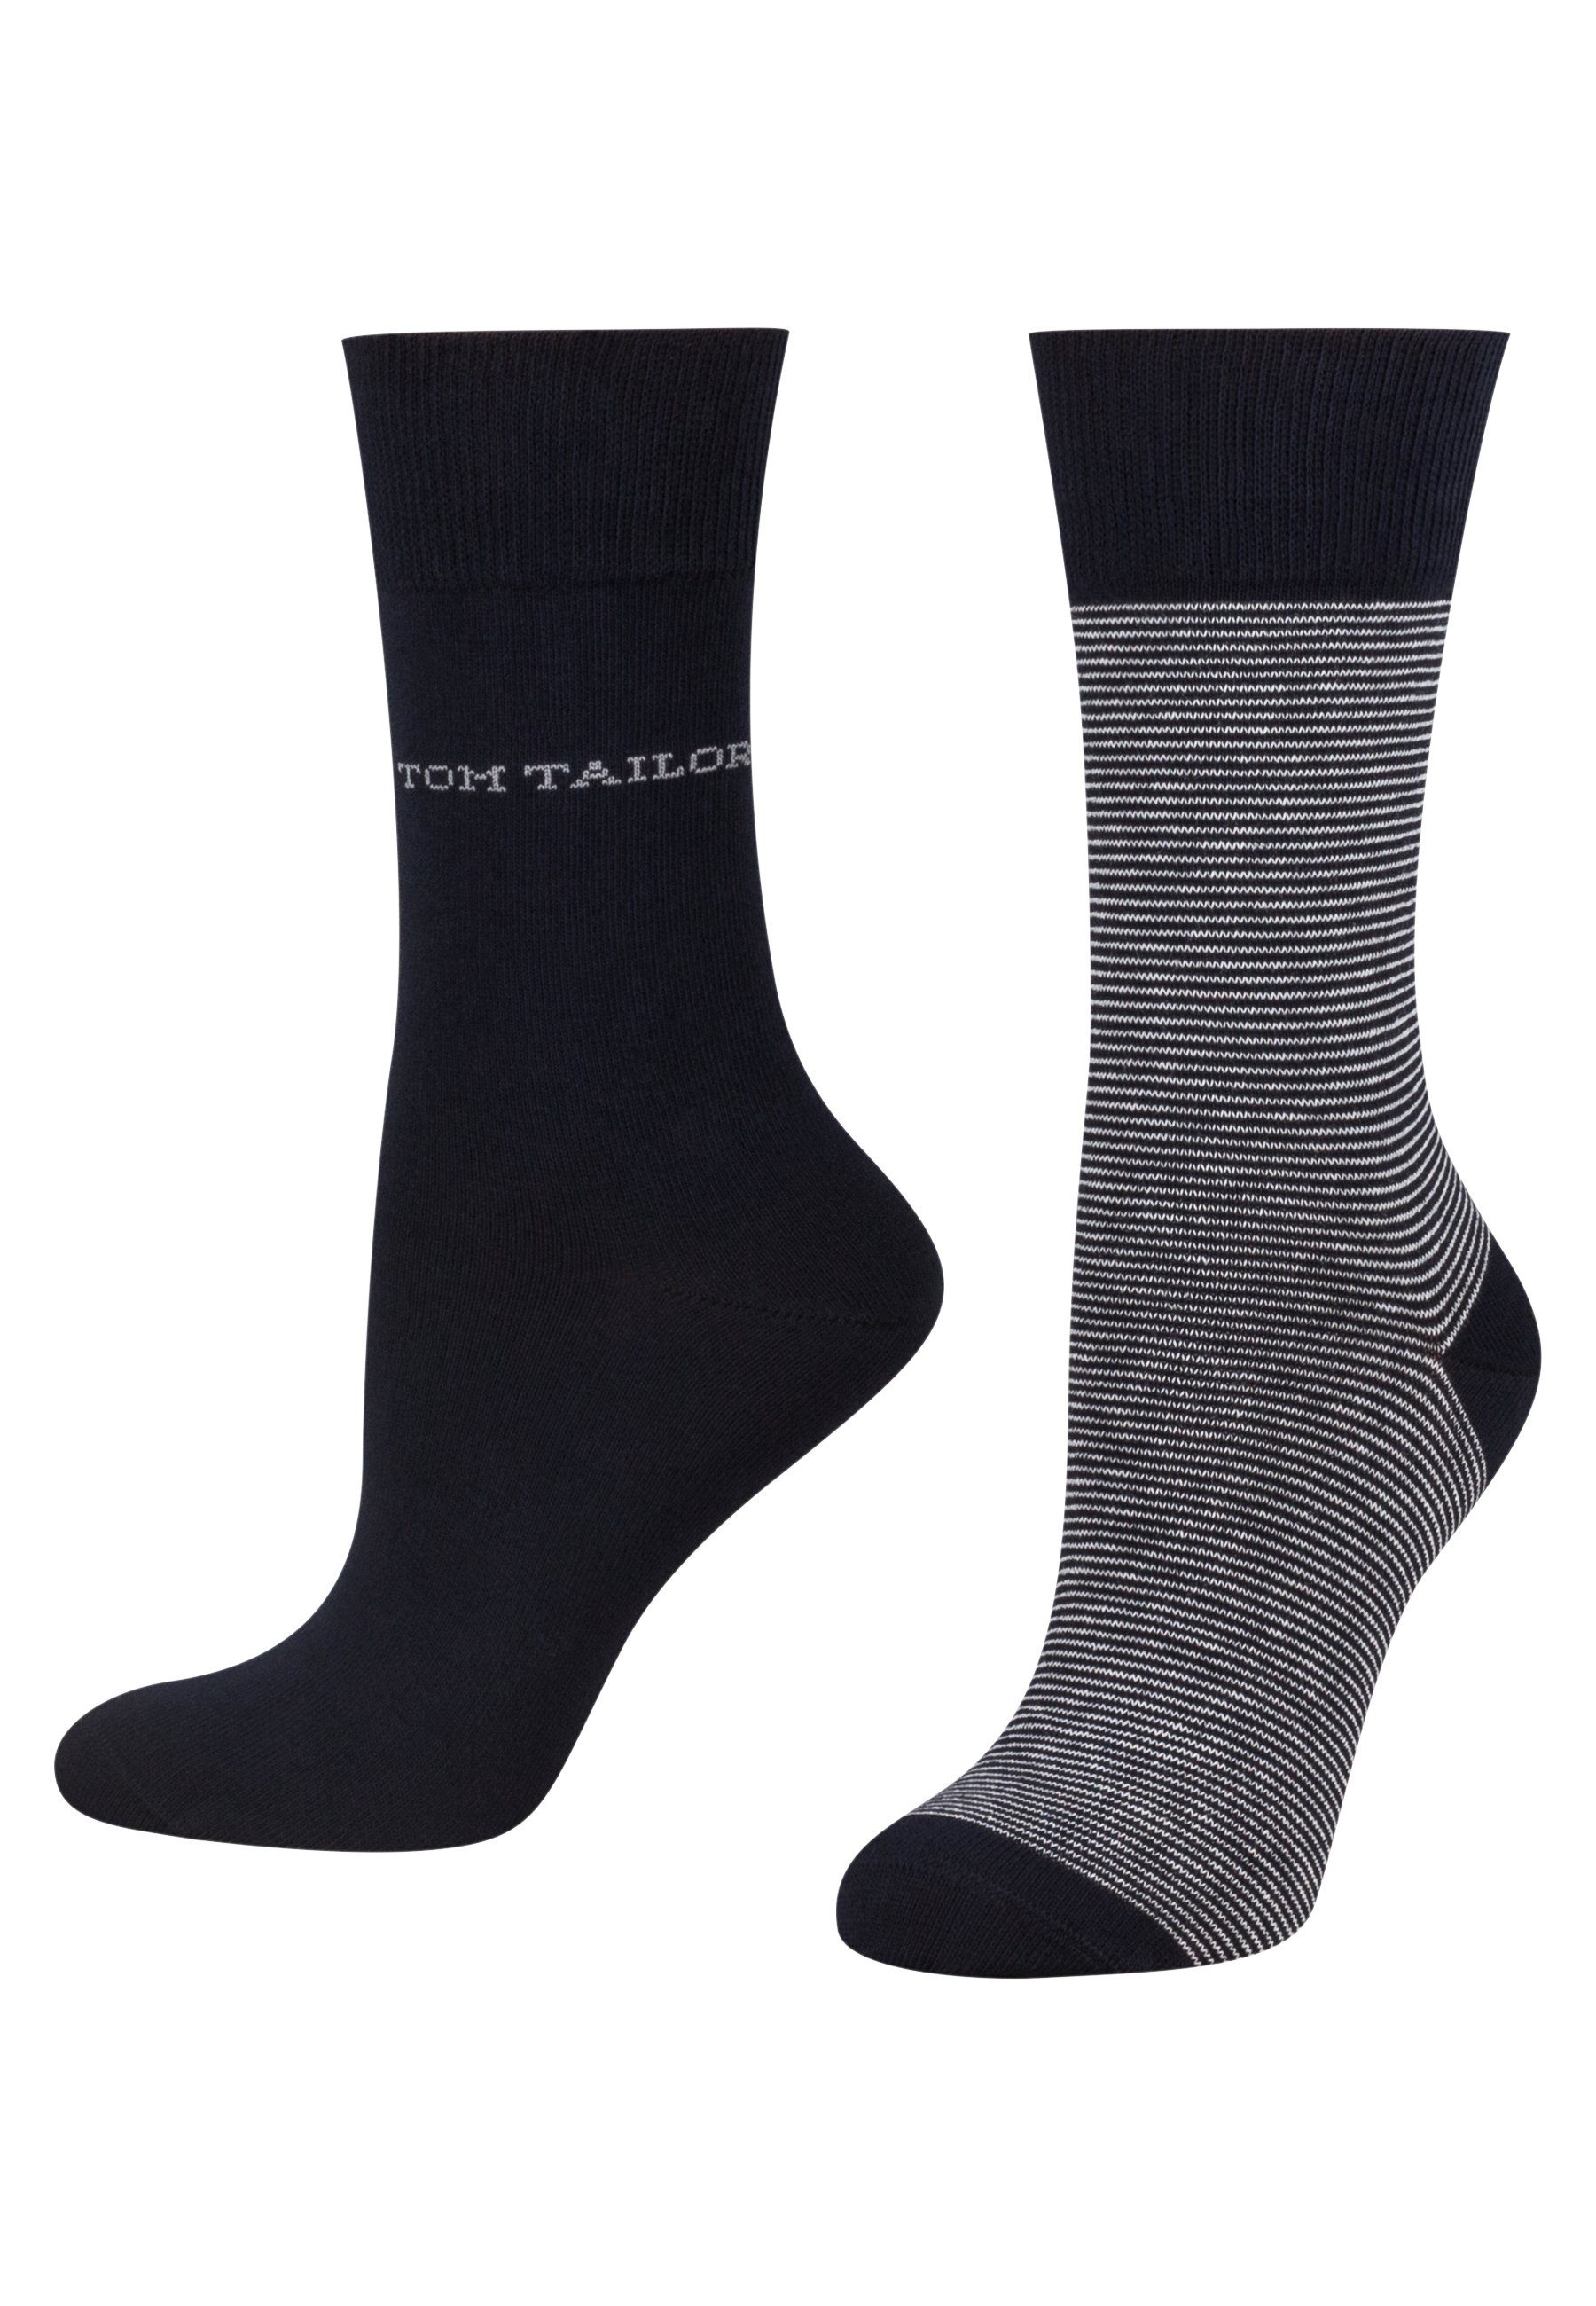 Tom TOM women TAILOR socks Tailor 2er navy stripe Socken basic 9521545042